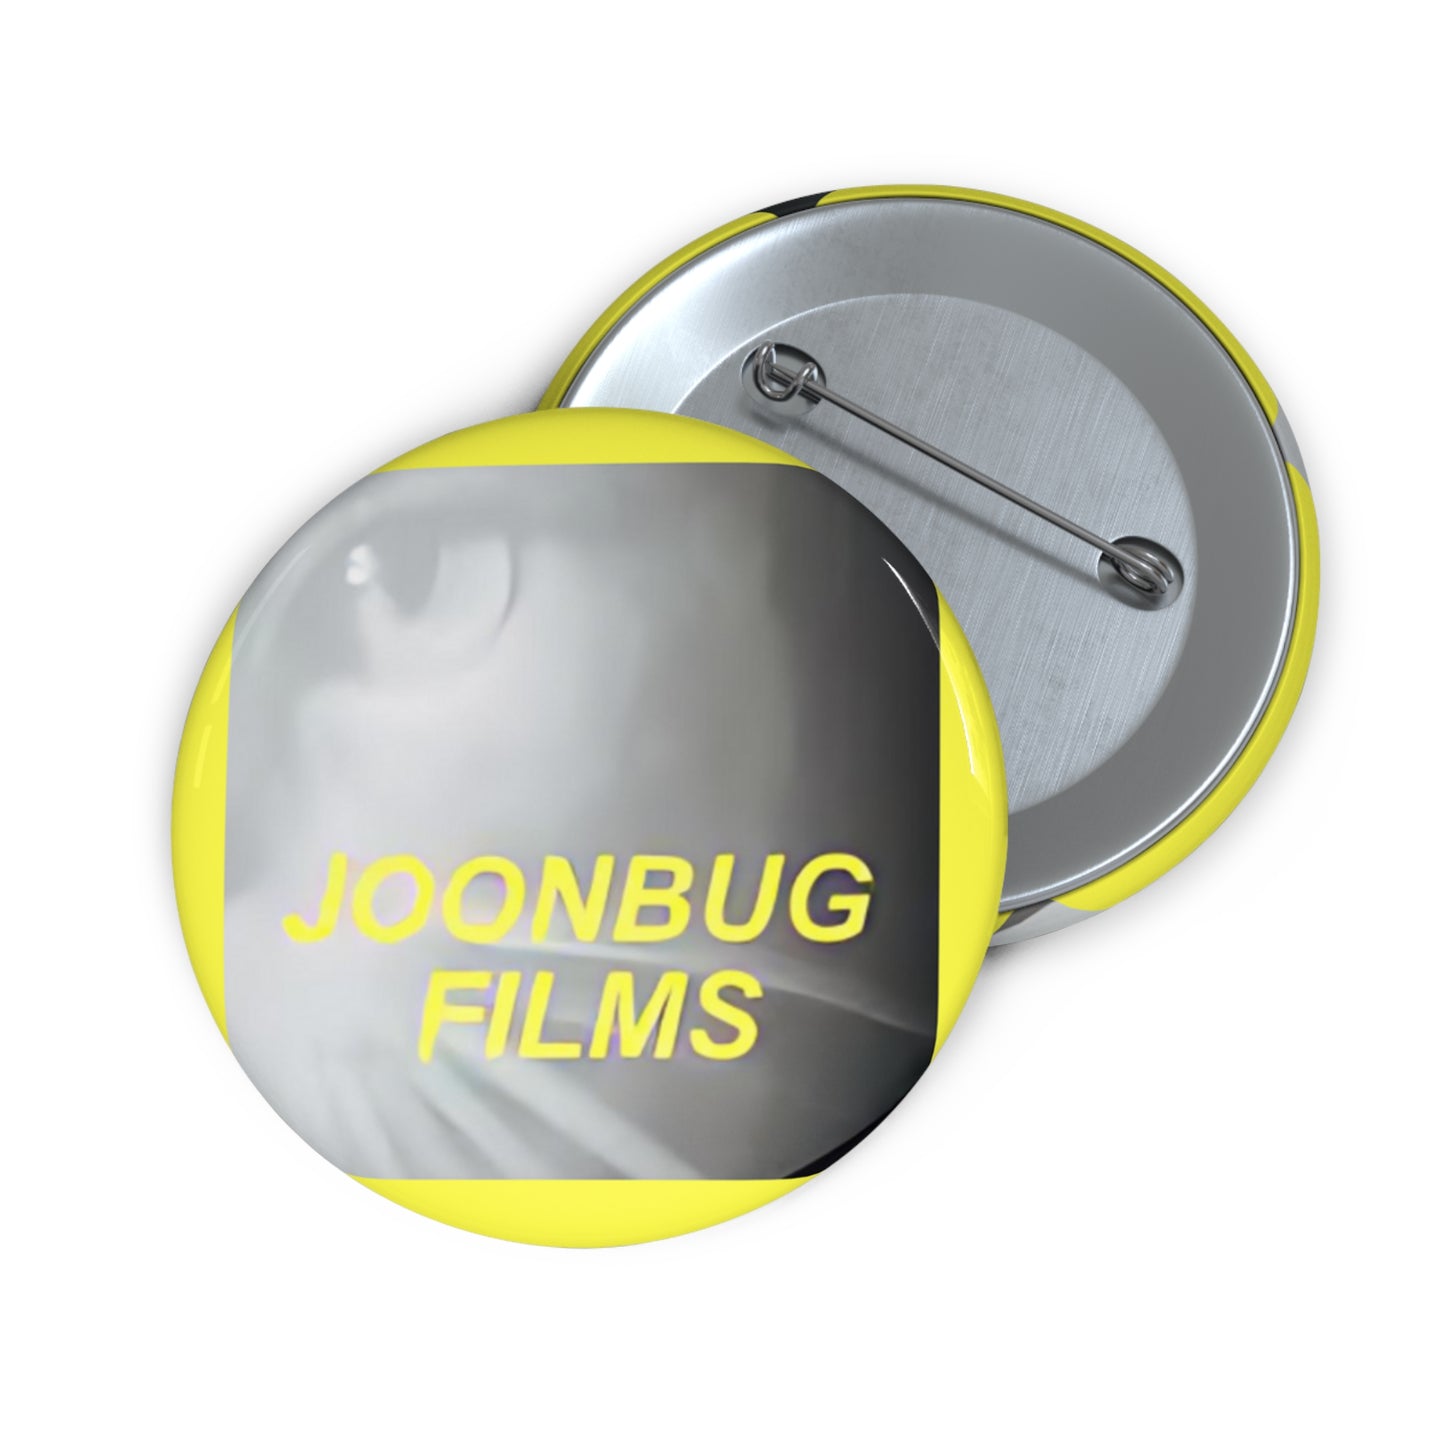 Joonbug Films Pin Buttons